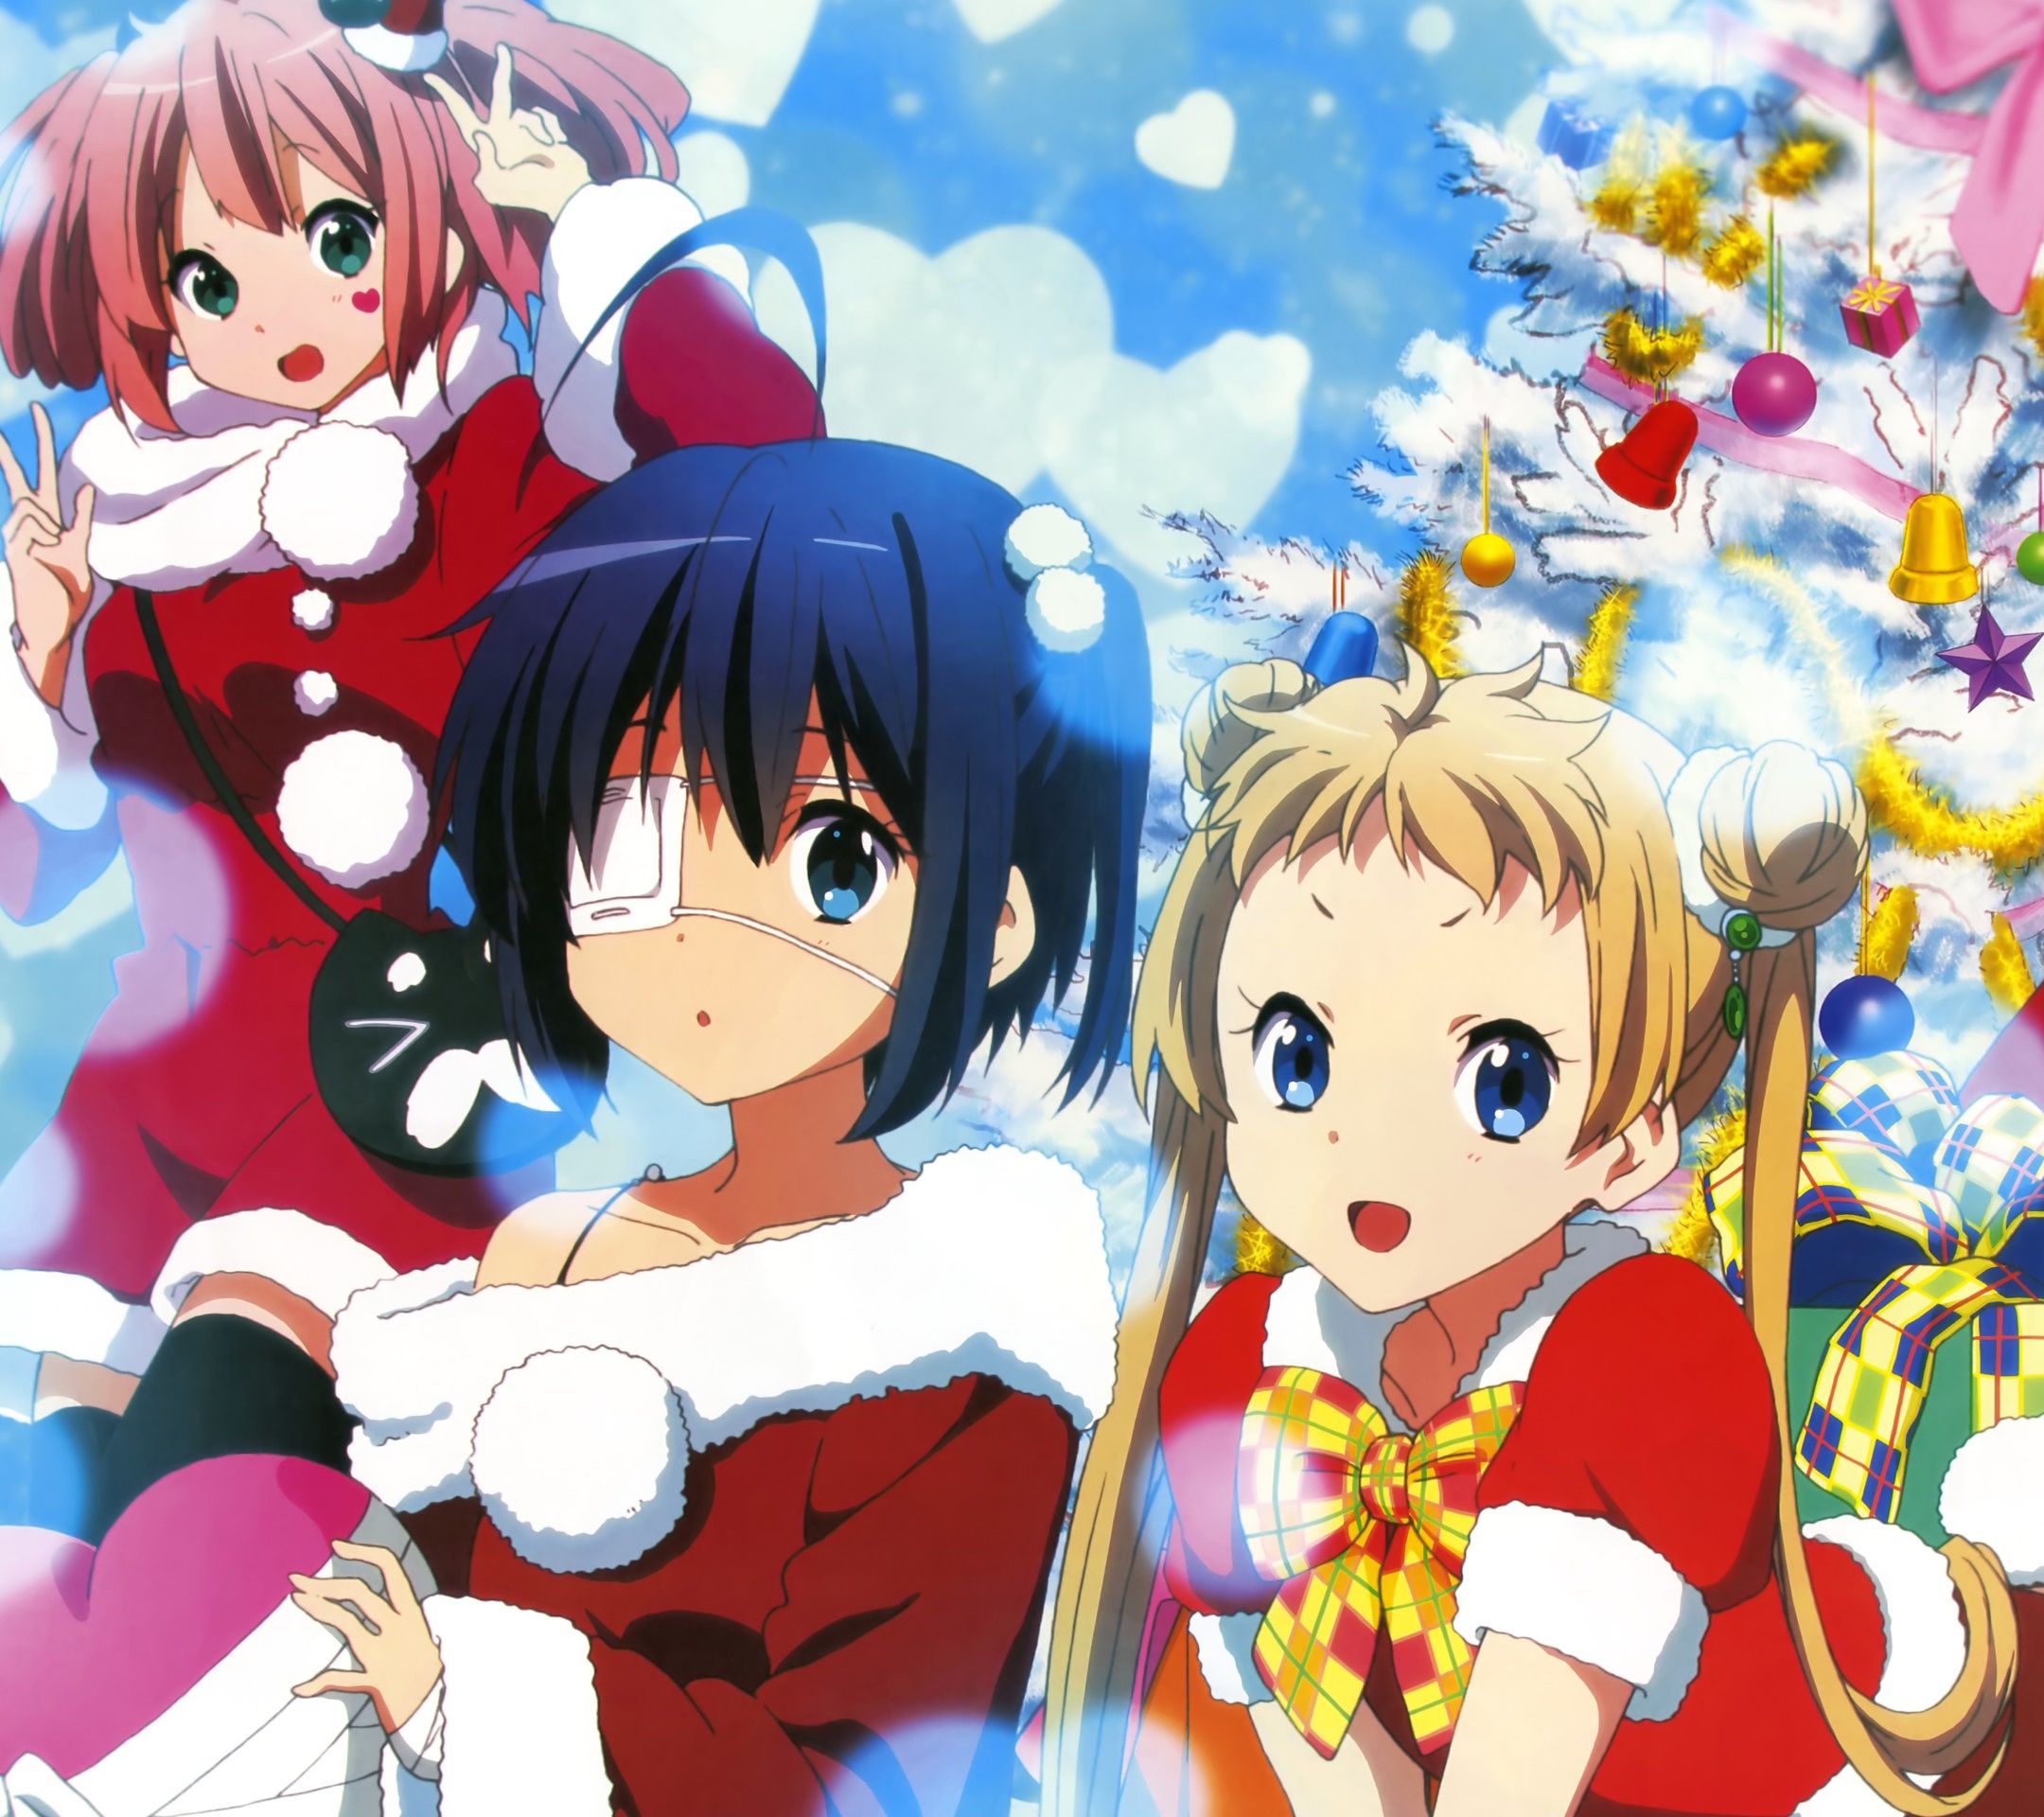 Christmas Anime Wallpapers